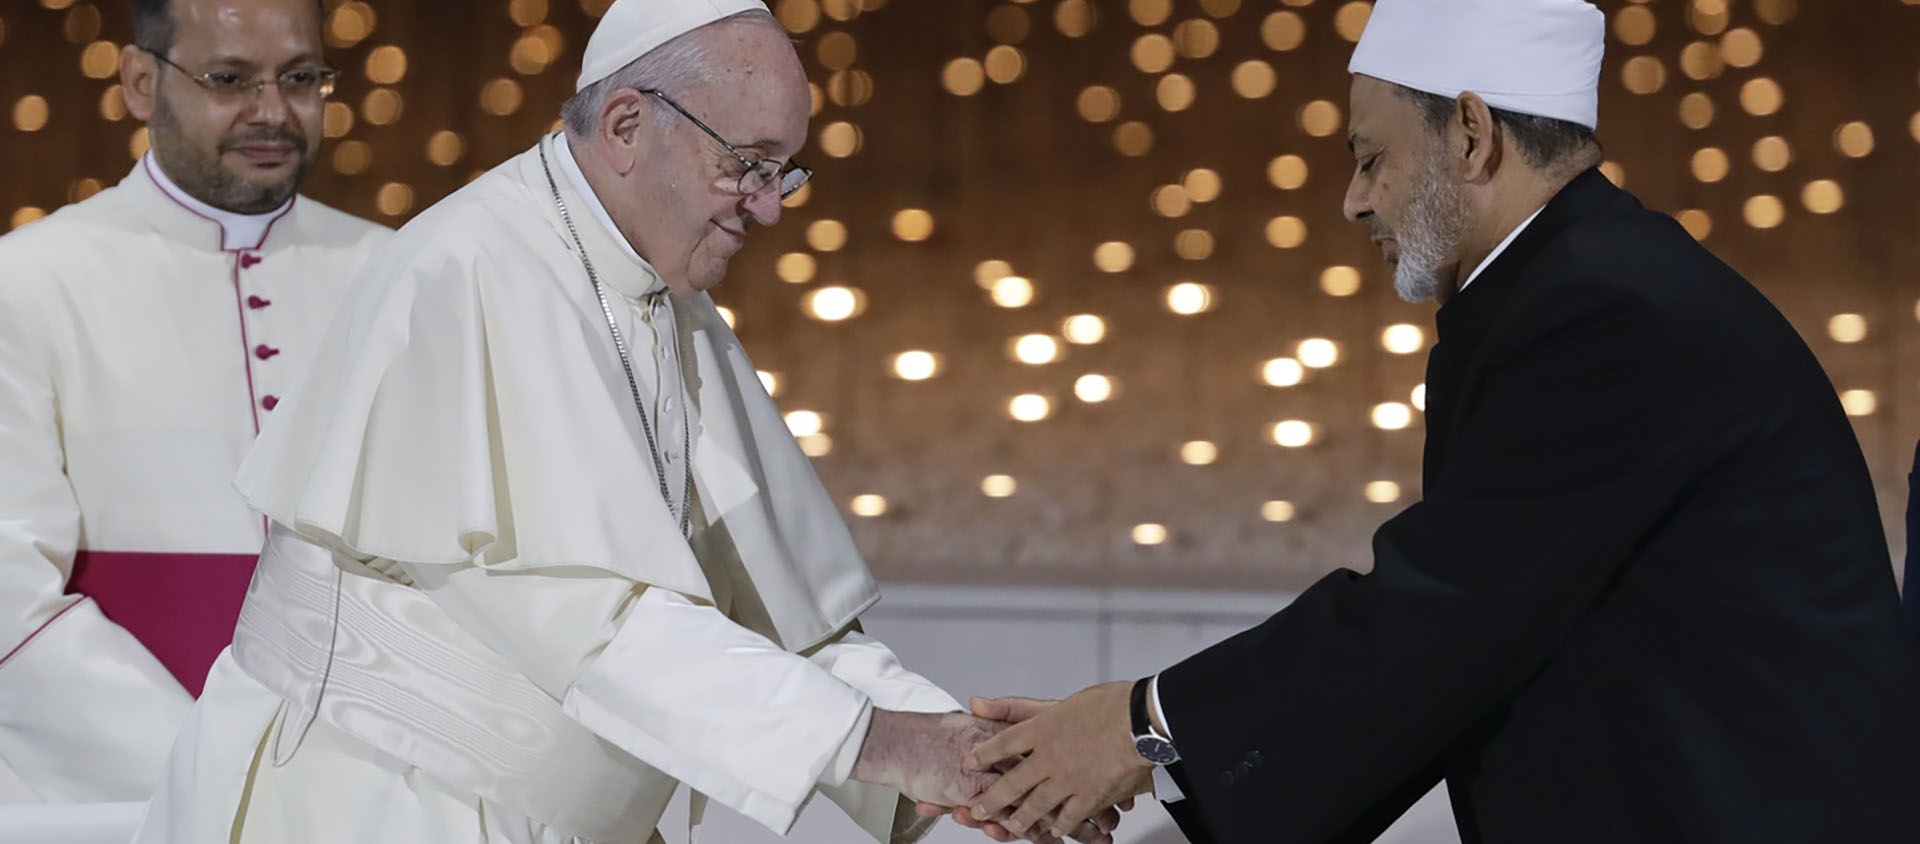 4 février 2019, le pape François et Ahmed al-Tayyeb, grand imam d'Al-Azhar, viennent de signer le Document sur la fraternité humaine, aux Emirats arabes unis | © Keystone